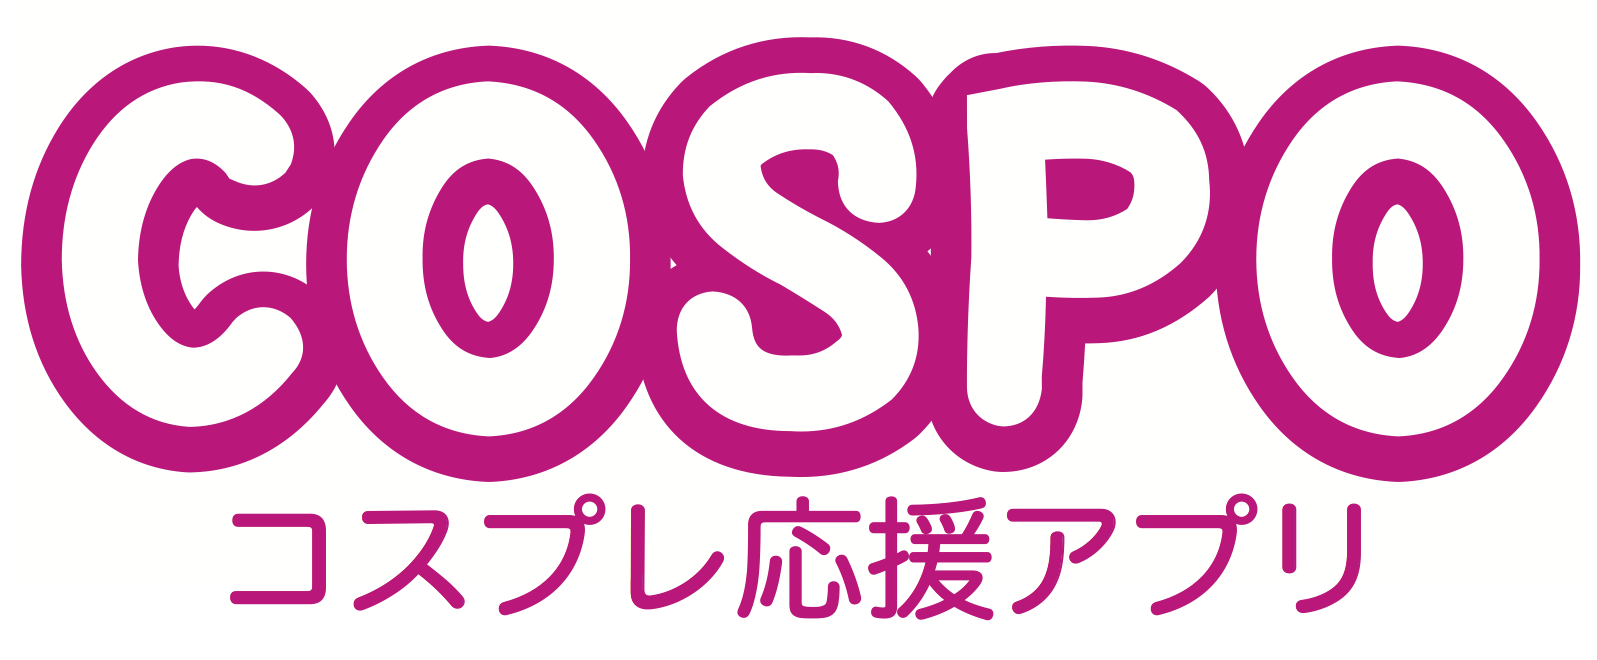 コスプレの楽しさ発見,応援アプリ「COSPO」